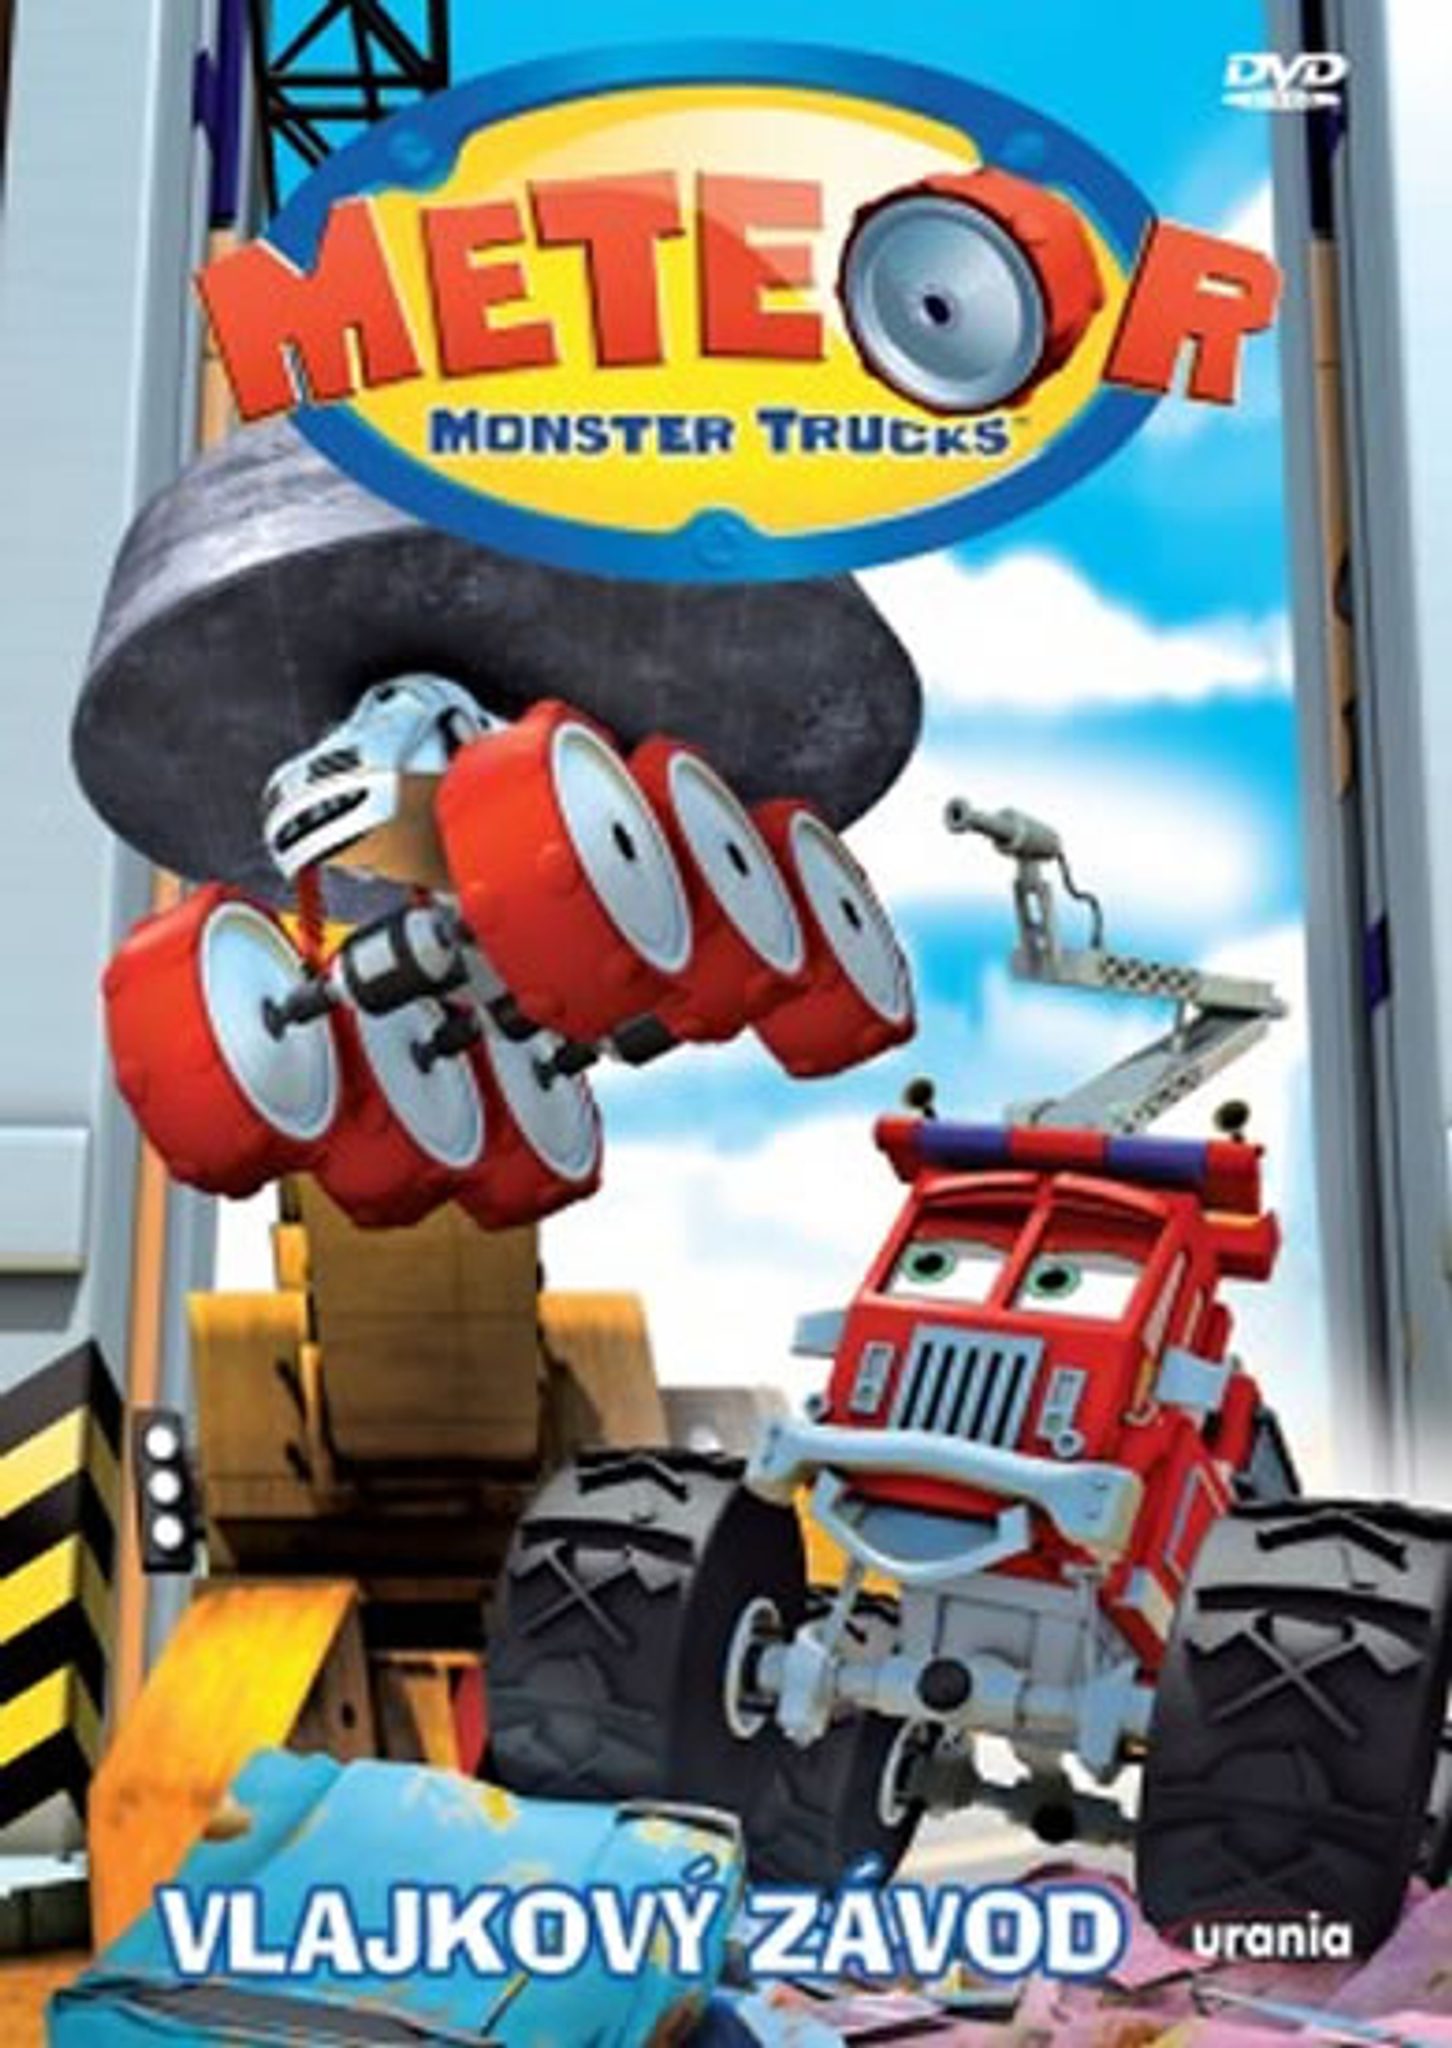 DVD Meteor Monster Trucks 2 - Vlajkov zvod